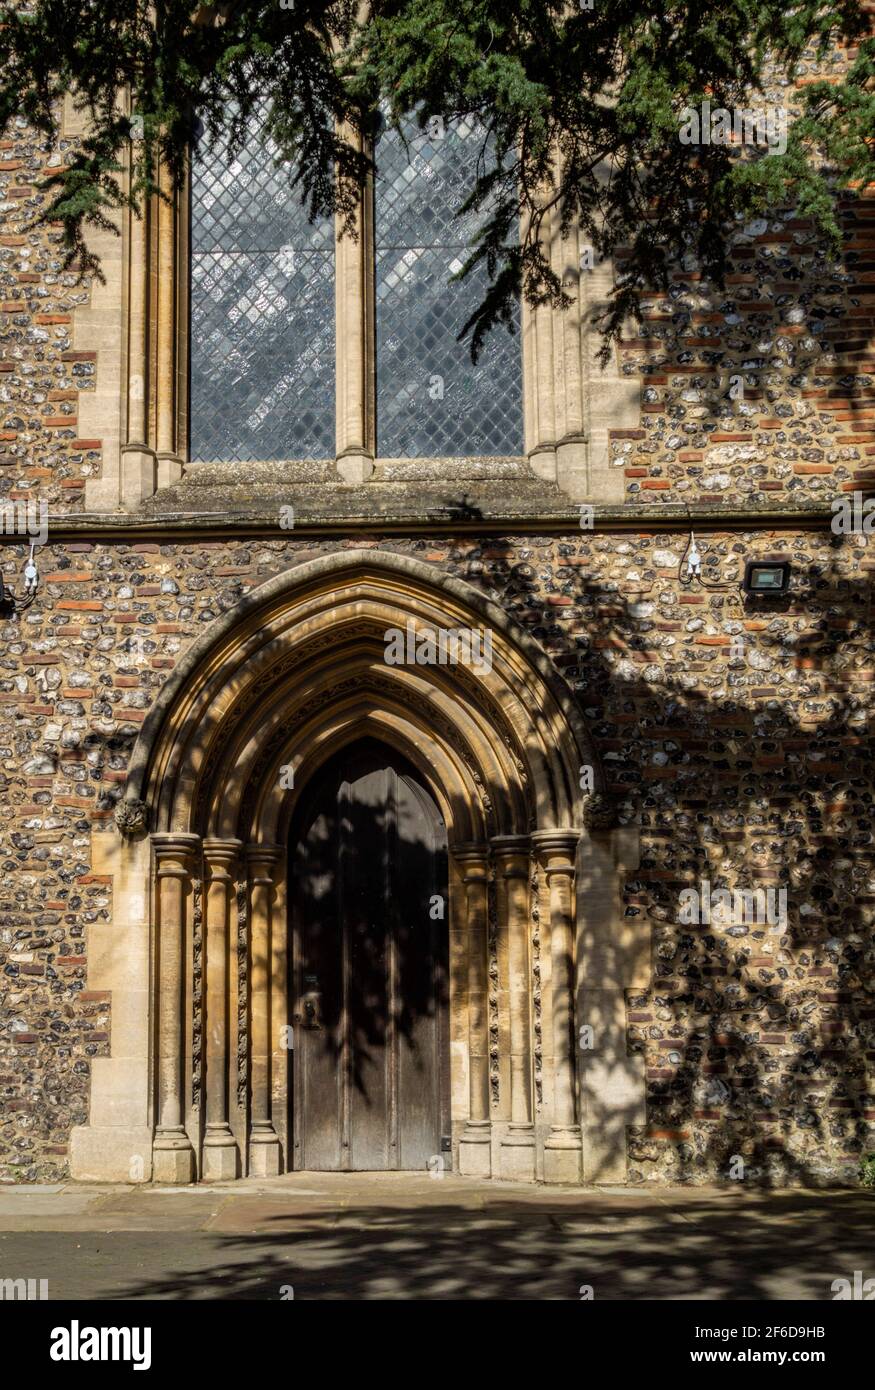 St. Albans Abbey auch bekannt als St. Albans Cathedral - Seitenansicht und gewölbter Eingang Stockfoto